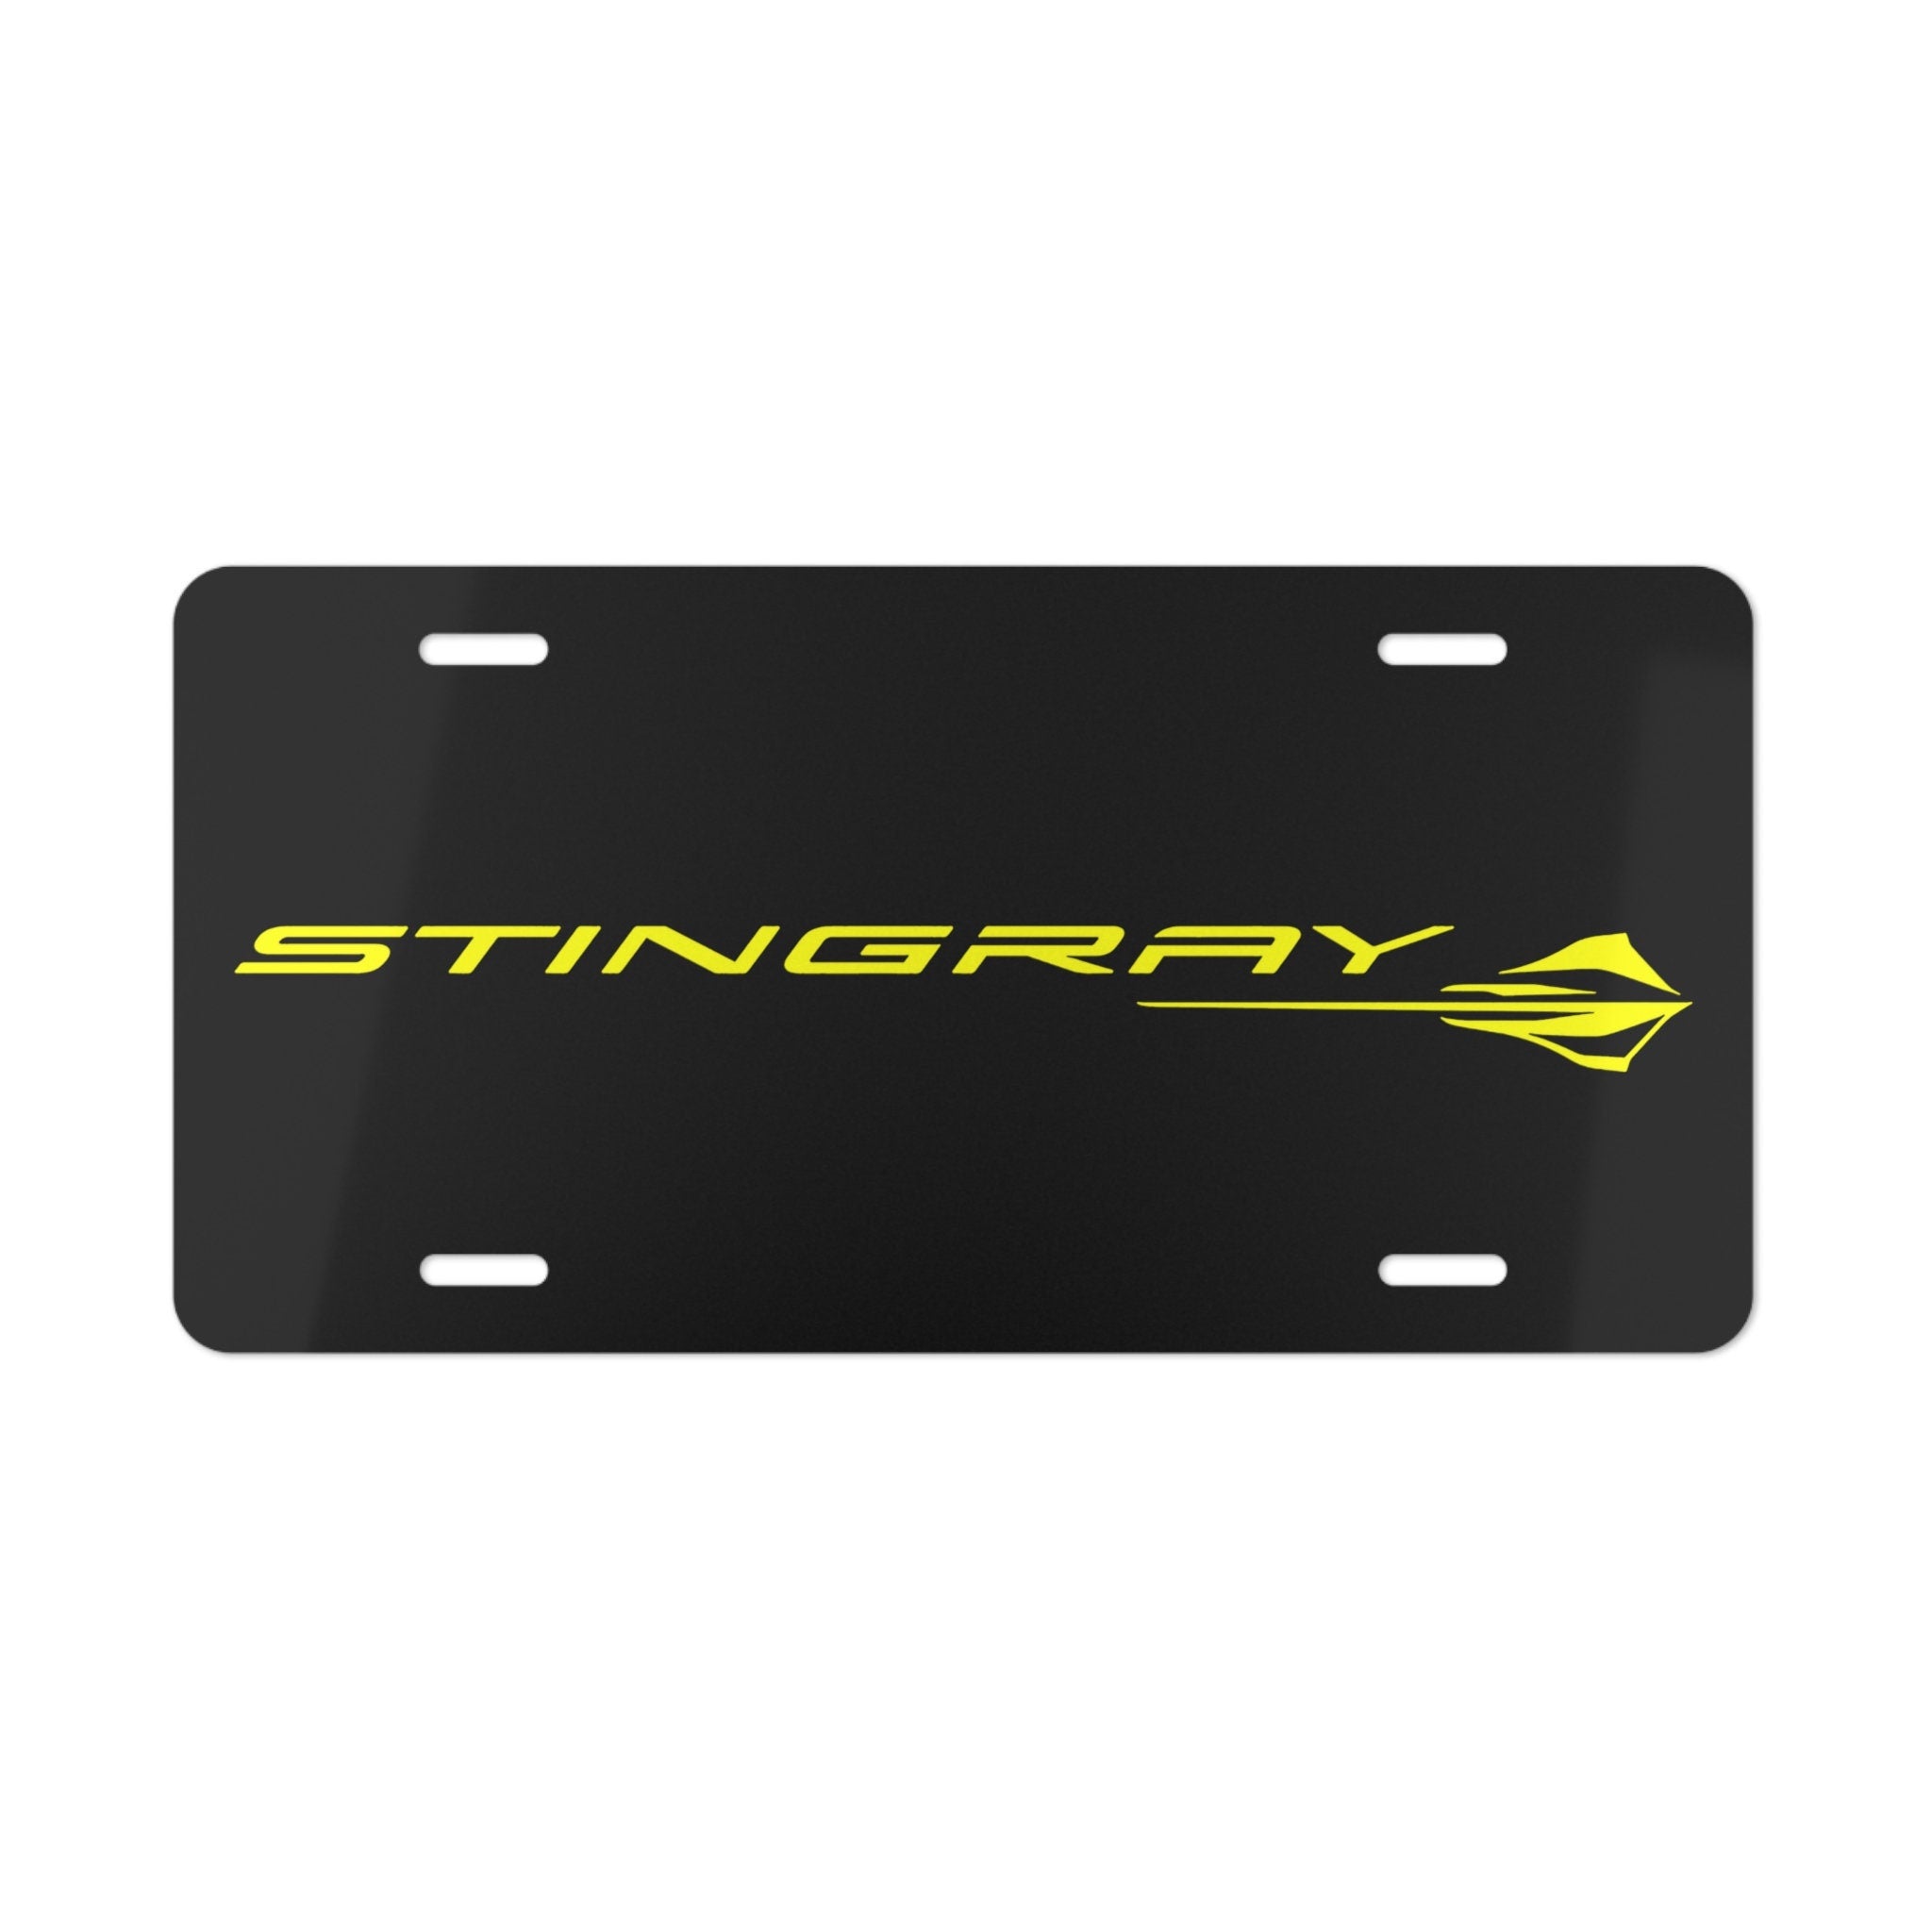 Corvette C7 Stingray License Plate on Black Background - Vette1 - C7 License Plates